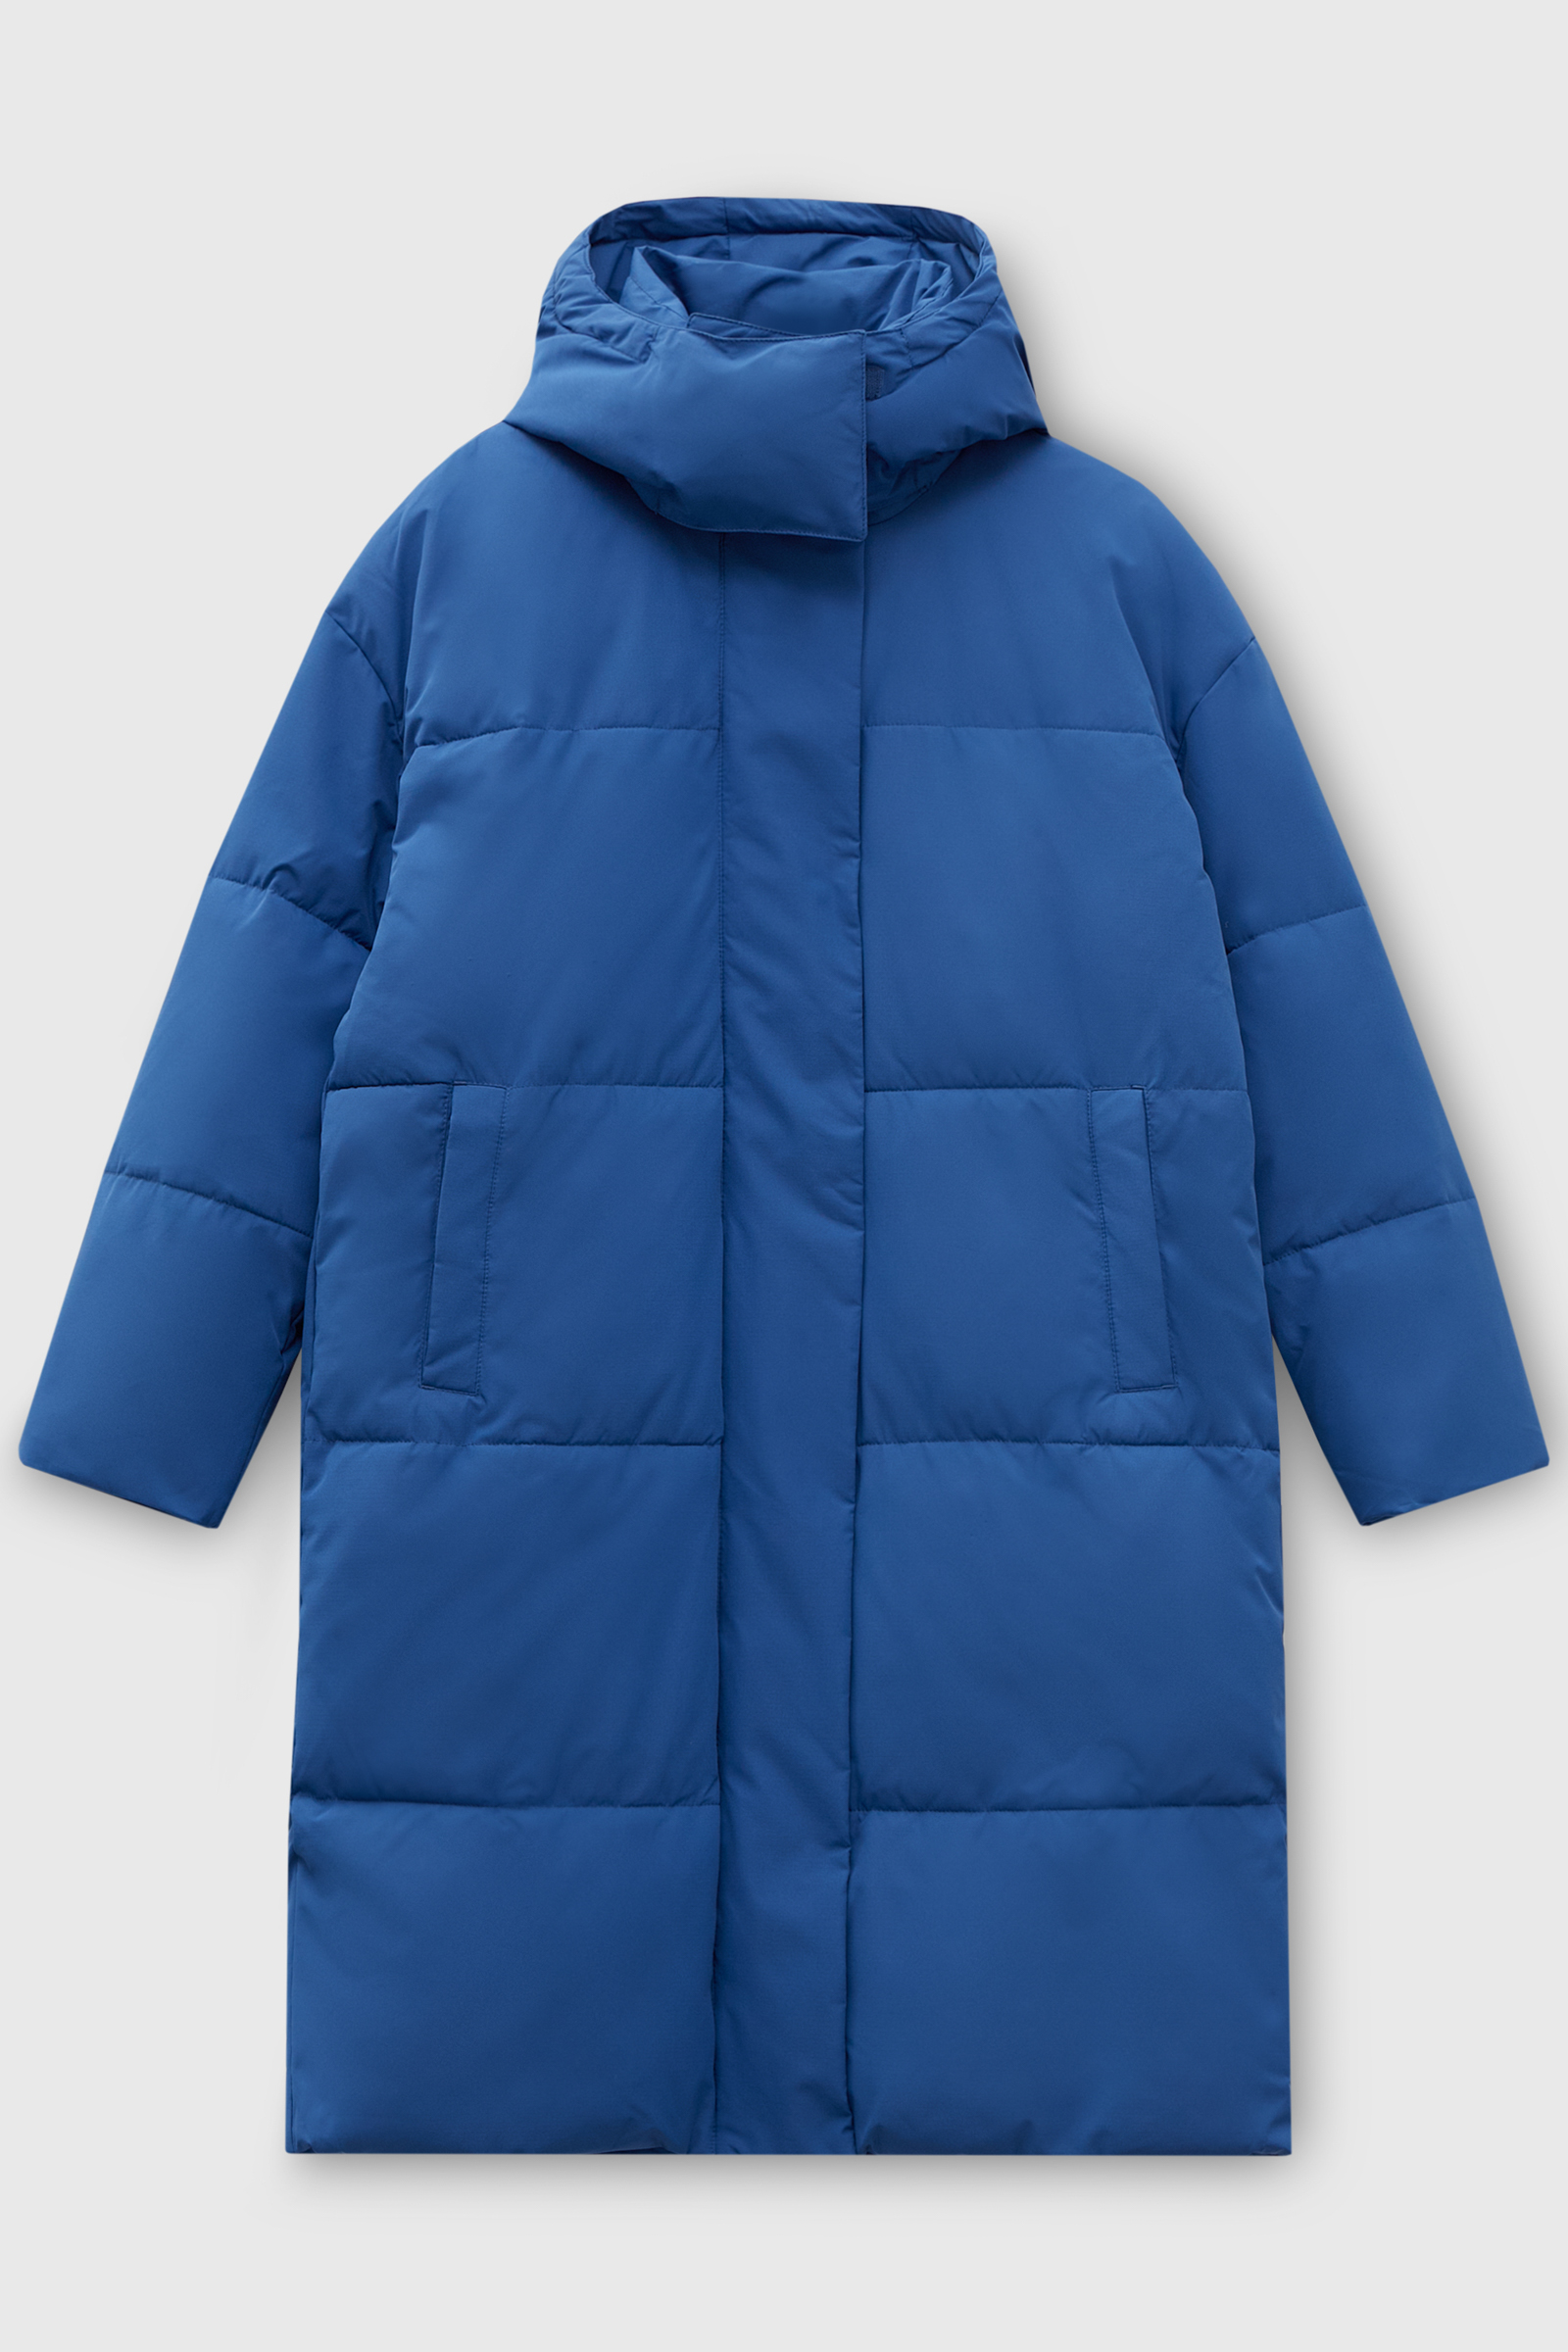 Пальто женское Finn Flare FWC11013 синее XS